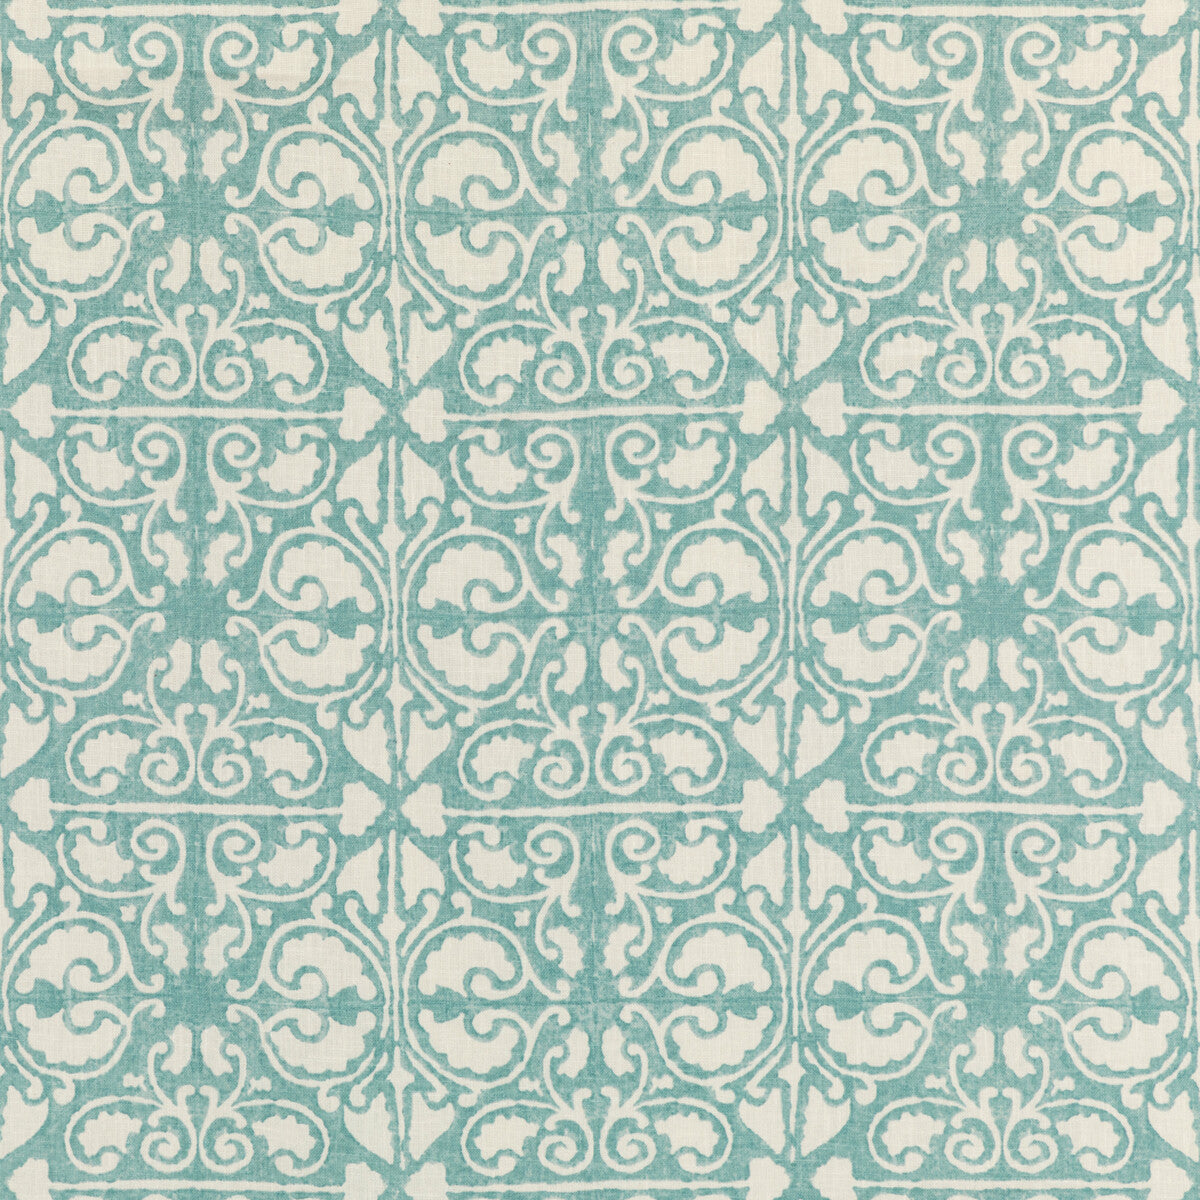 Kravet Basics fabric in agra tile-135 color - pattern AGRA TILE.135.0 - by Kravet Basics in the L&